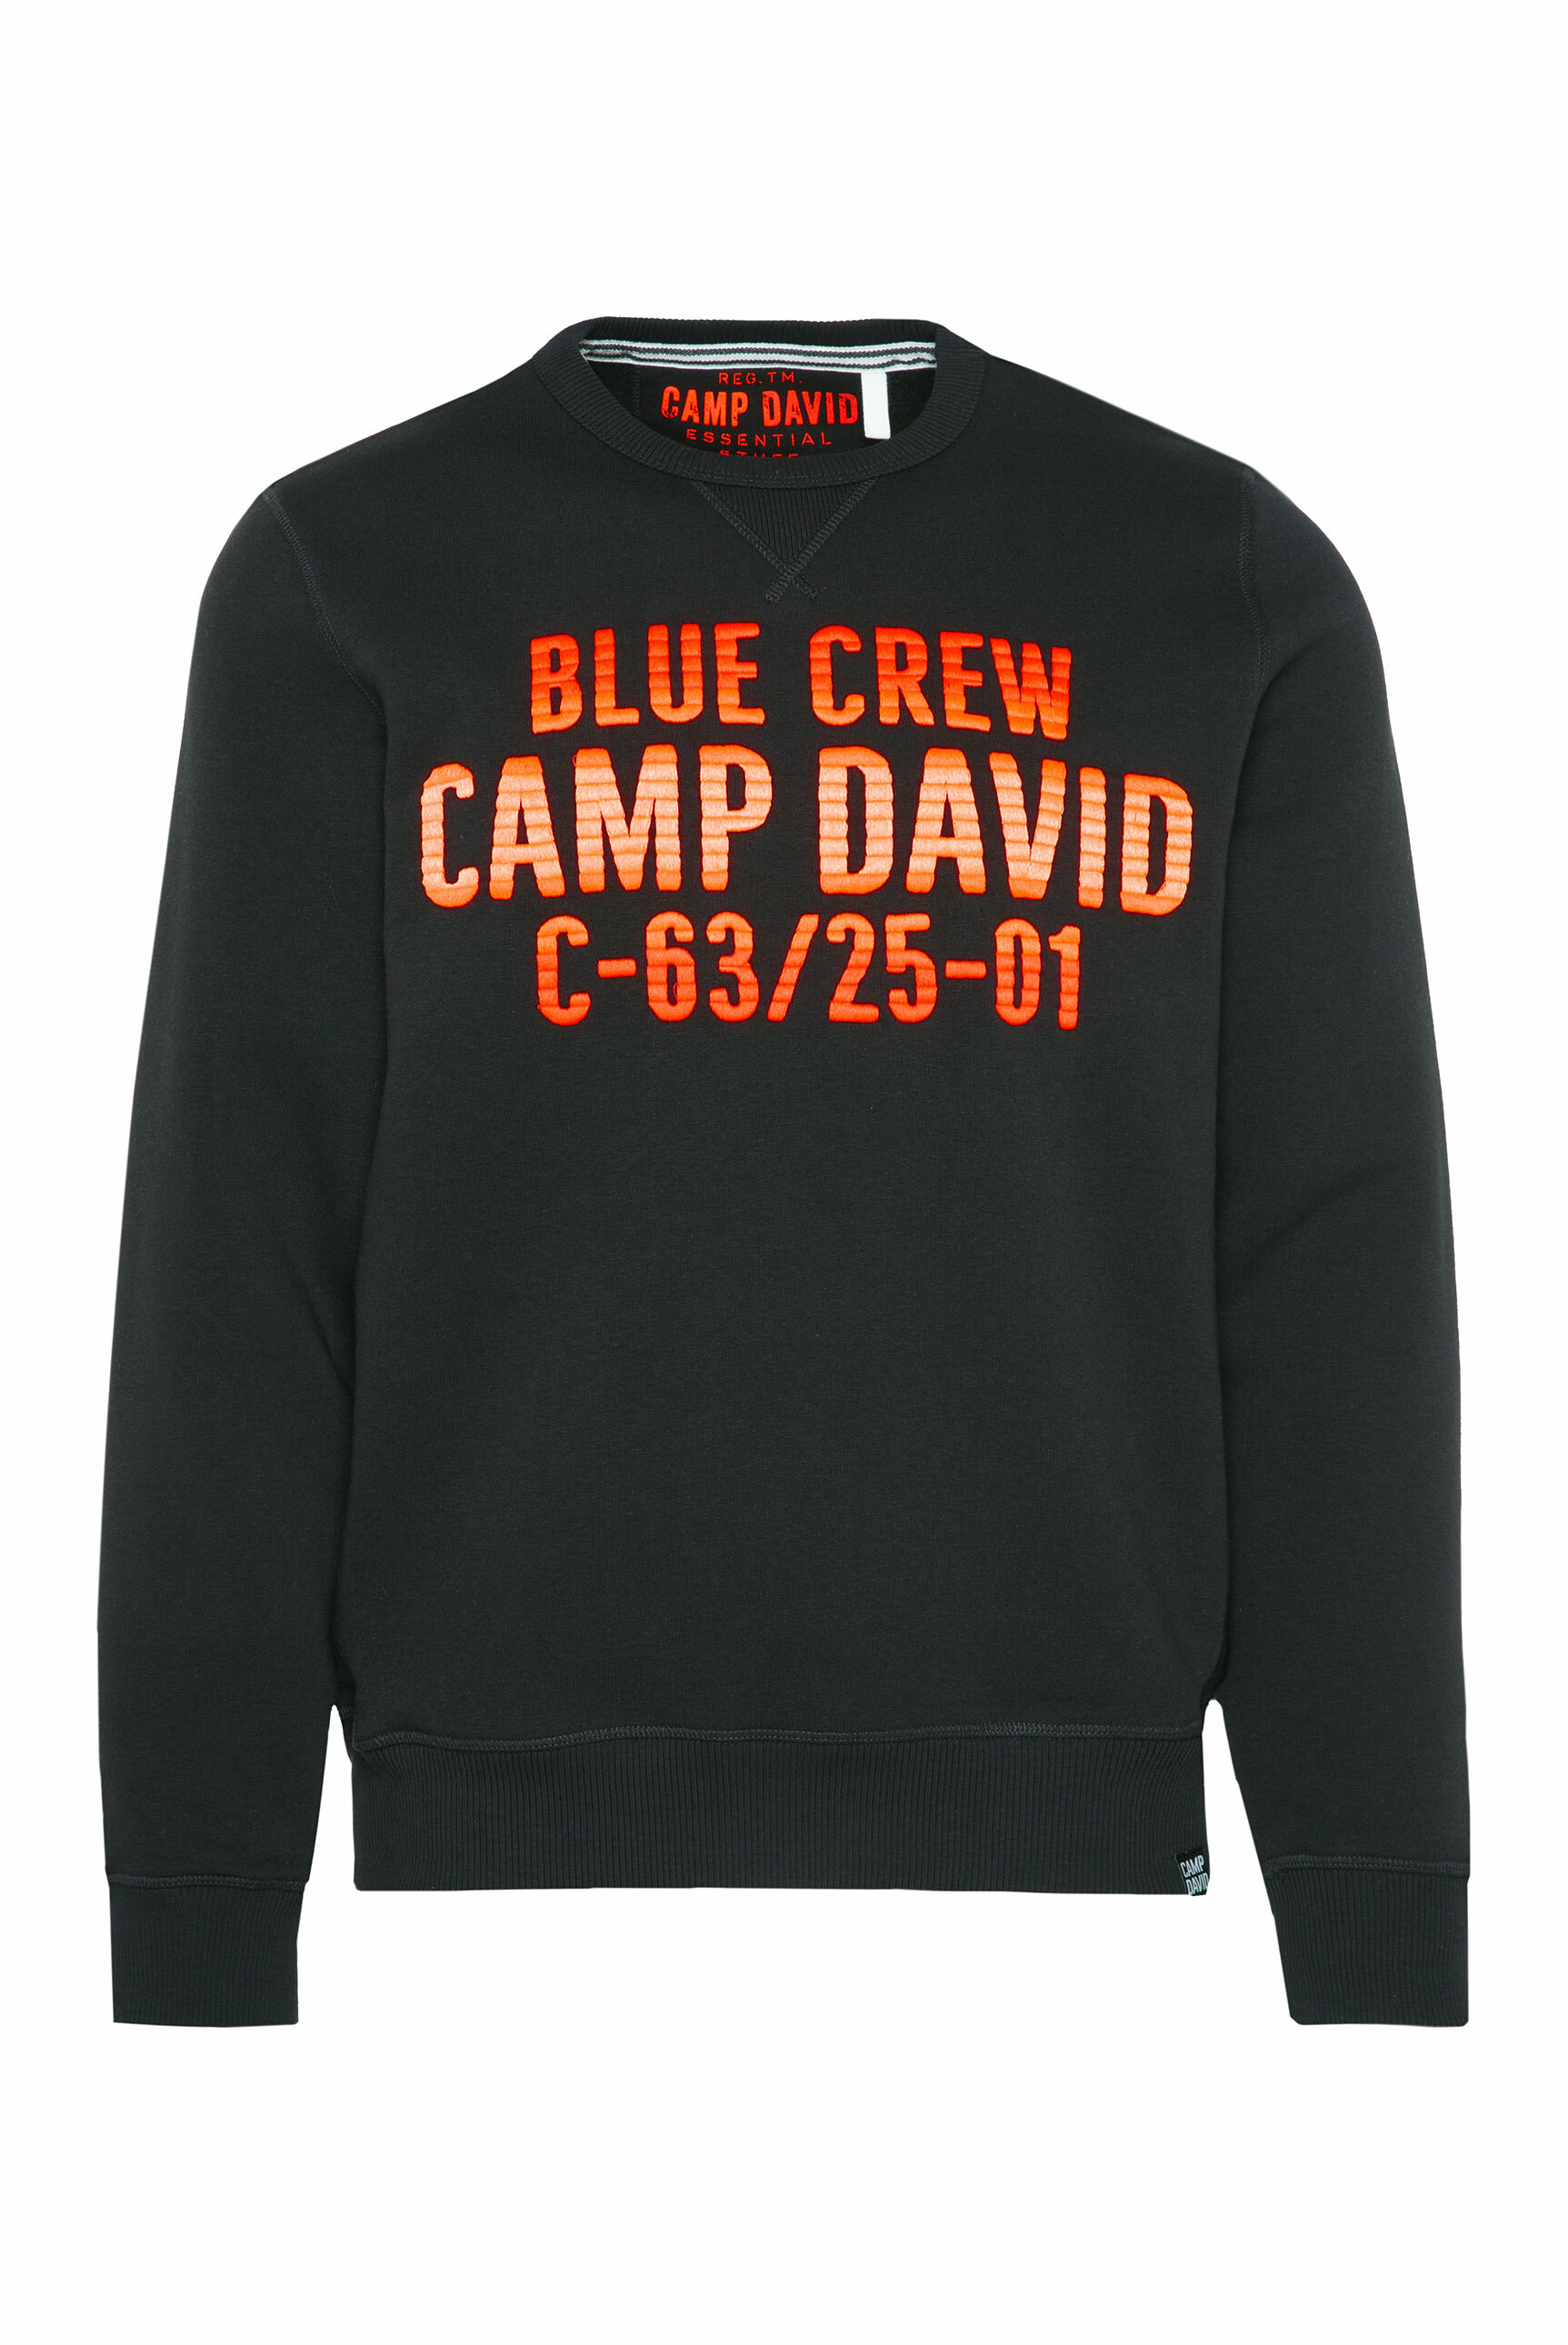 Mężczyźni Odzież CAMP DAVID Bluzka sportowa w kolorze Czarnym 